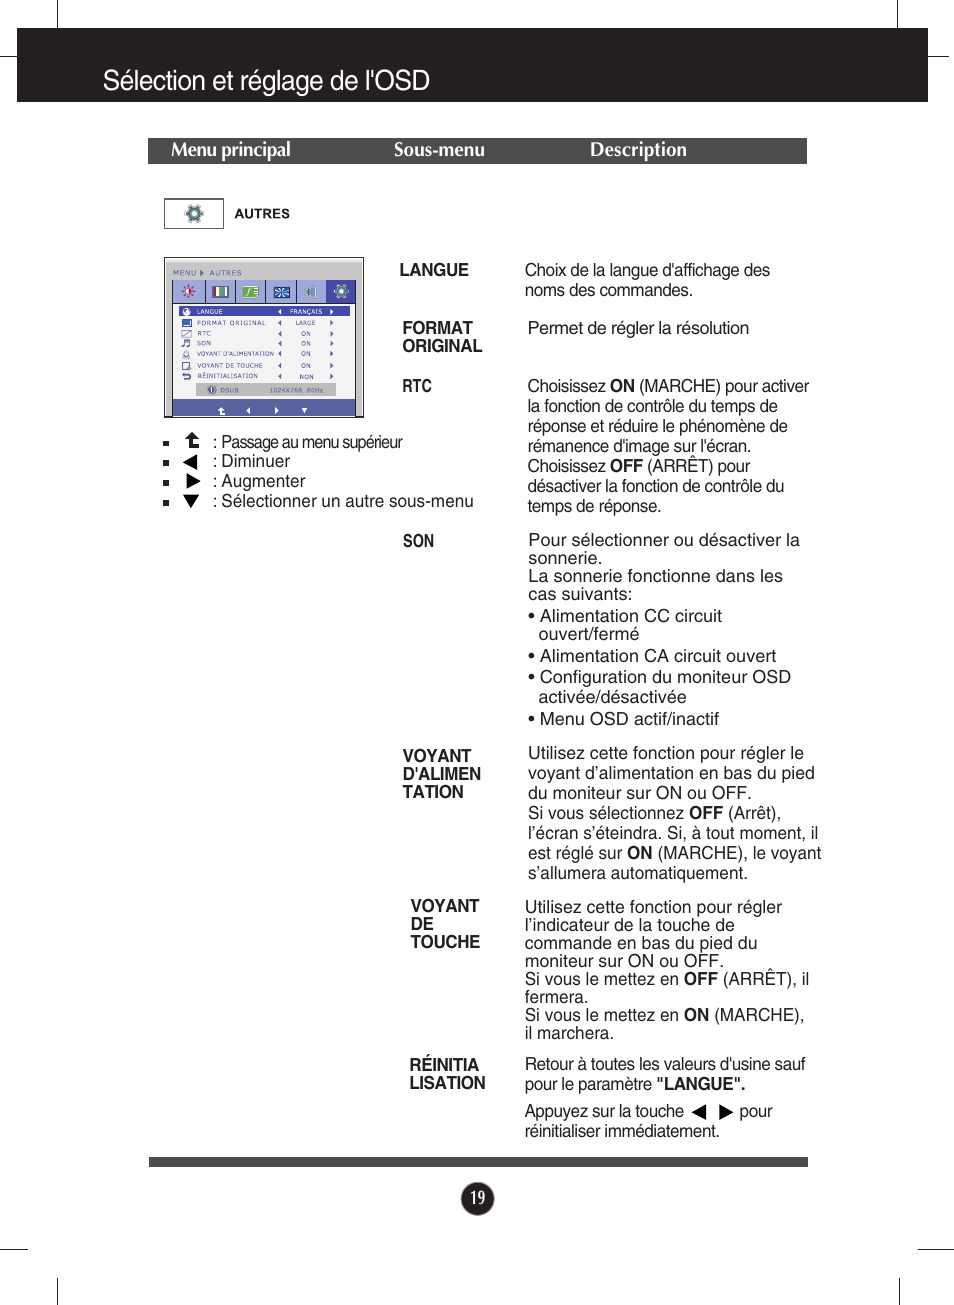 Autres, Sélection et réglage de l'osd | LG E2290V-SN Manuel d'utilisation | Page 20 / 26